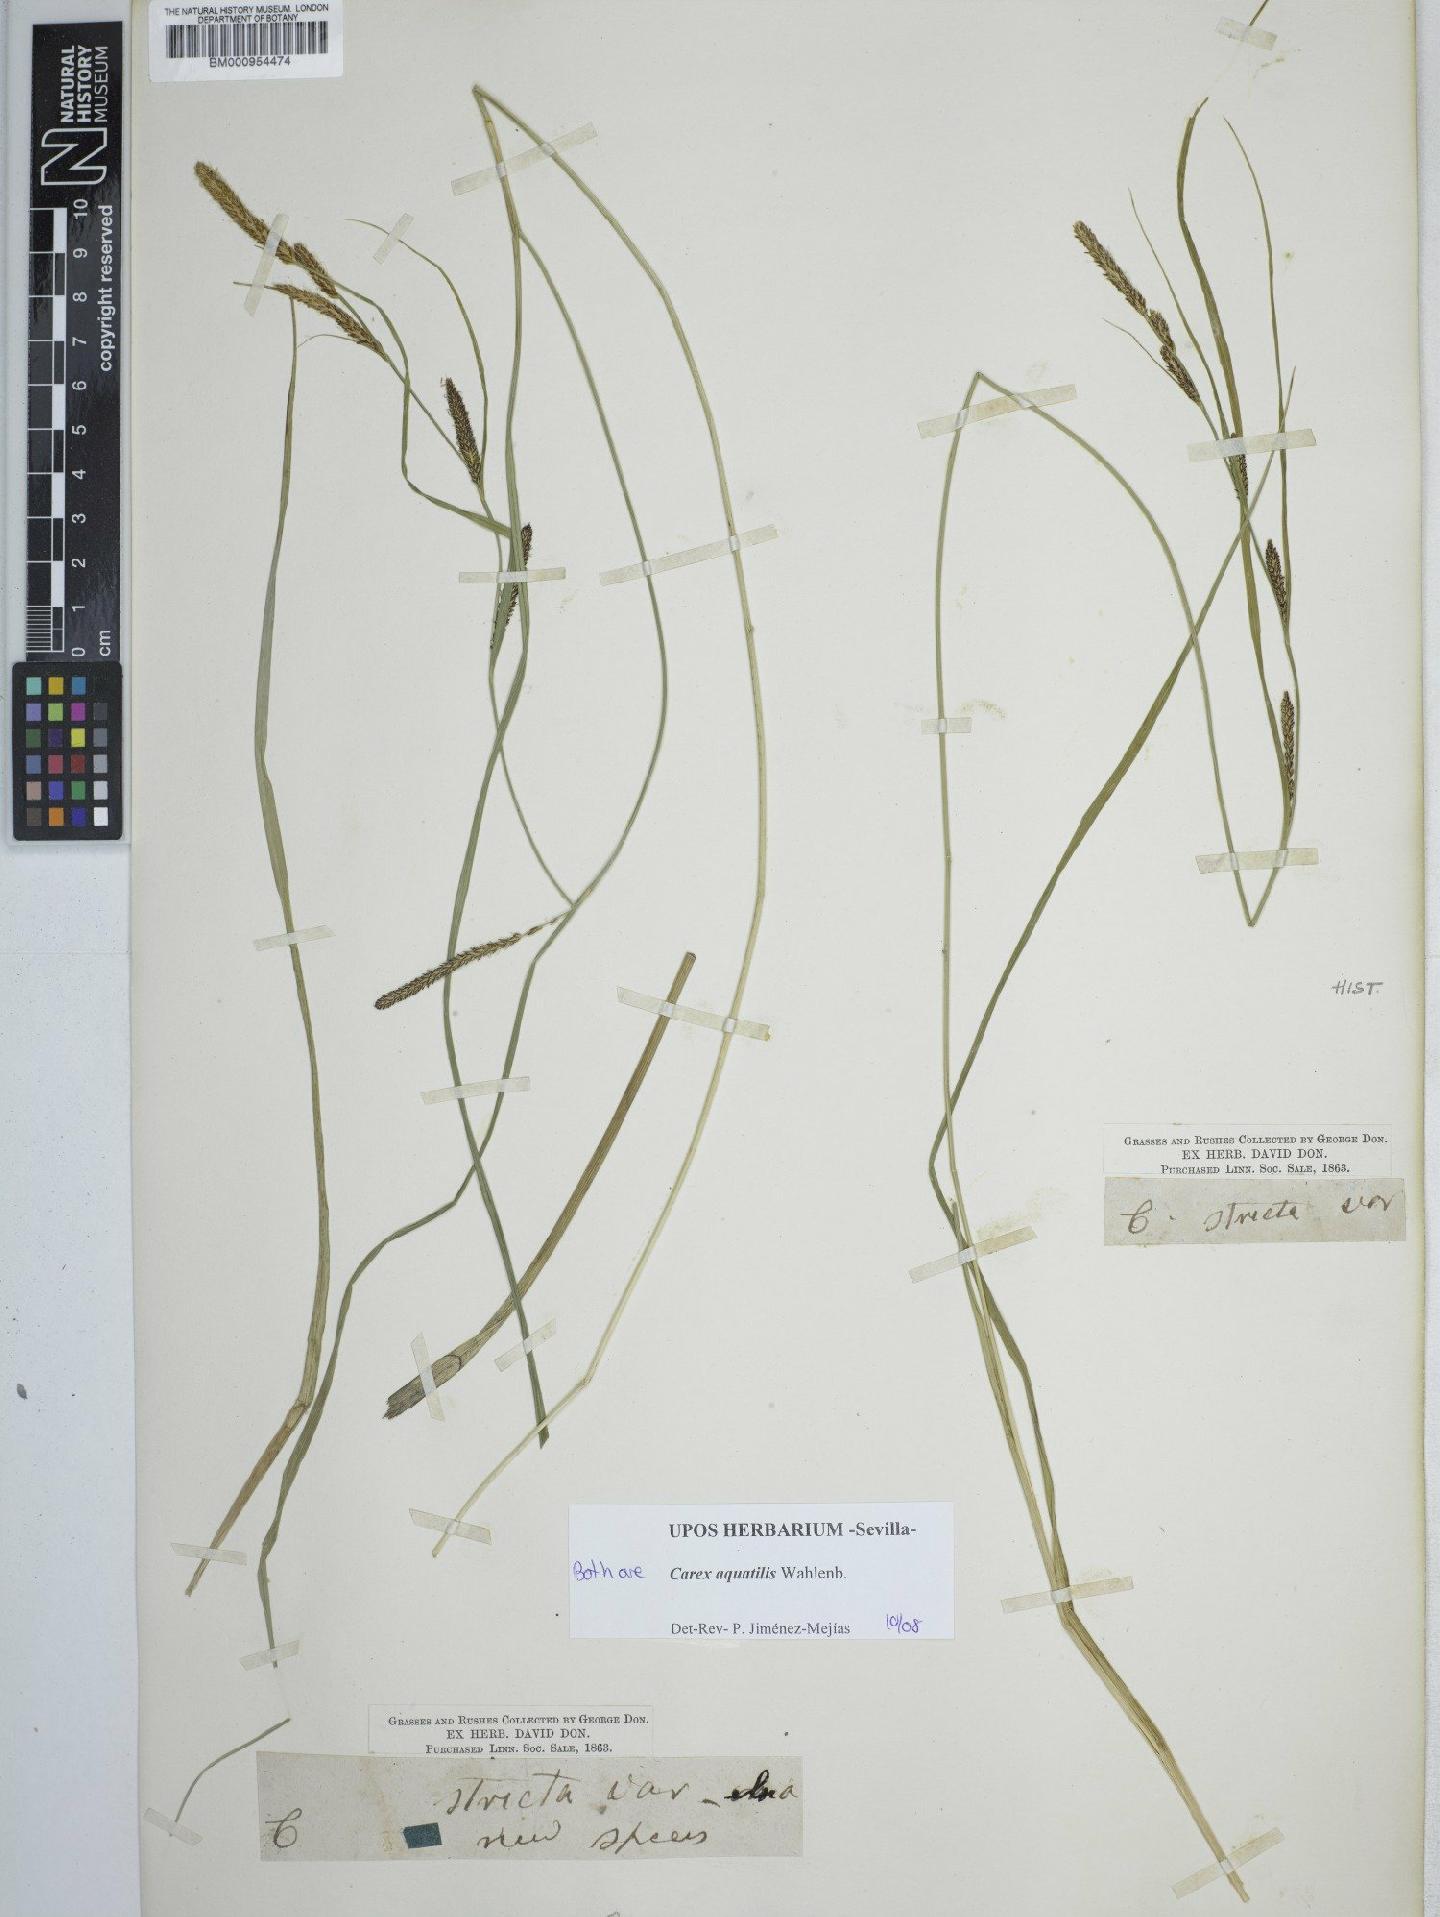 To NHMUK collection (Carex aquatilis Wahlenb.; NHMUK:ecatalogue:2292939)